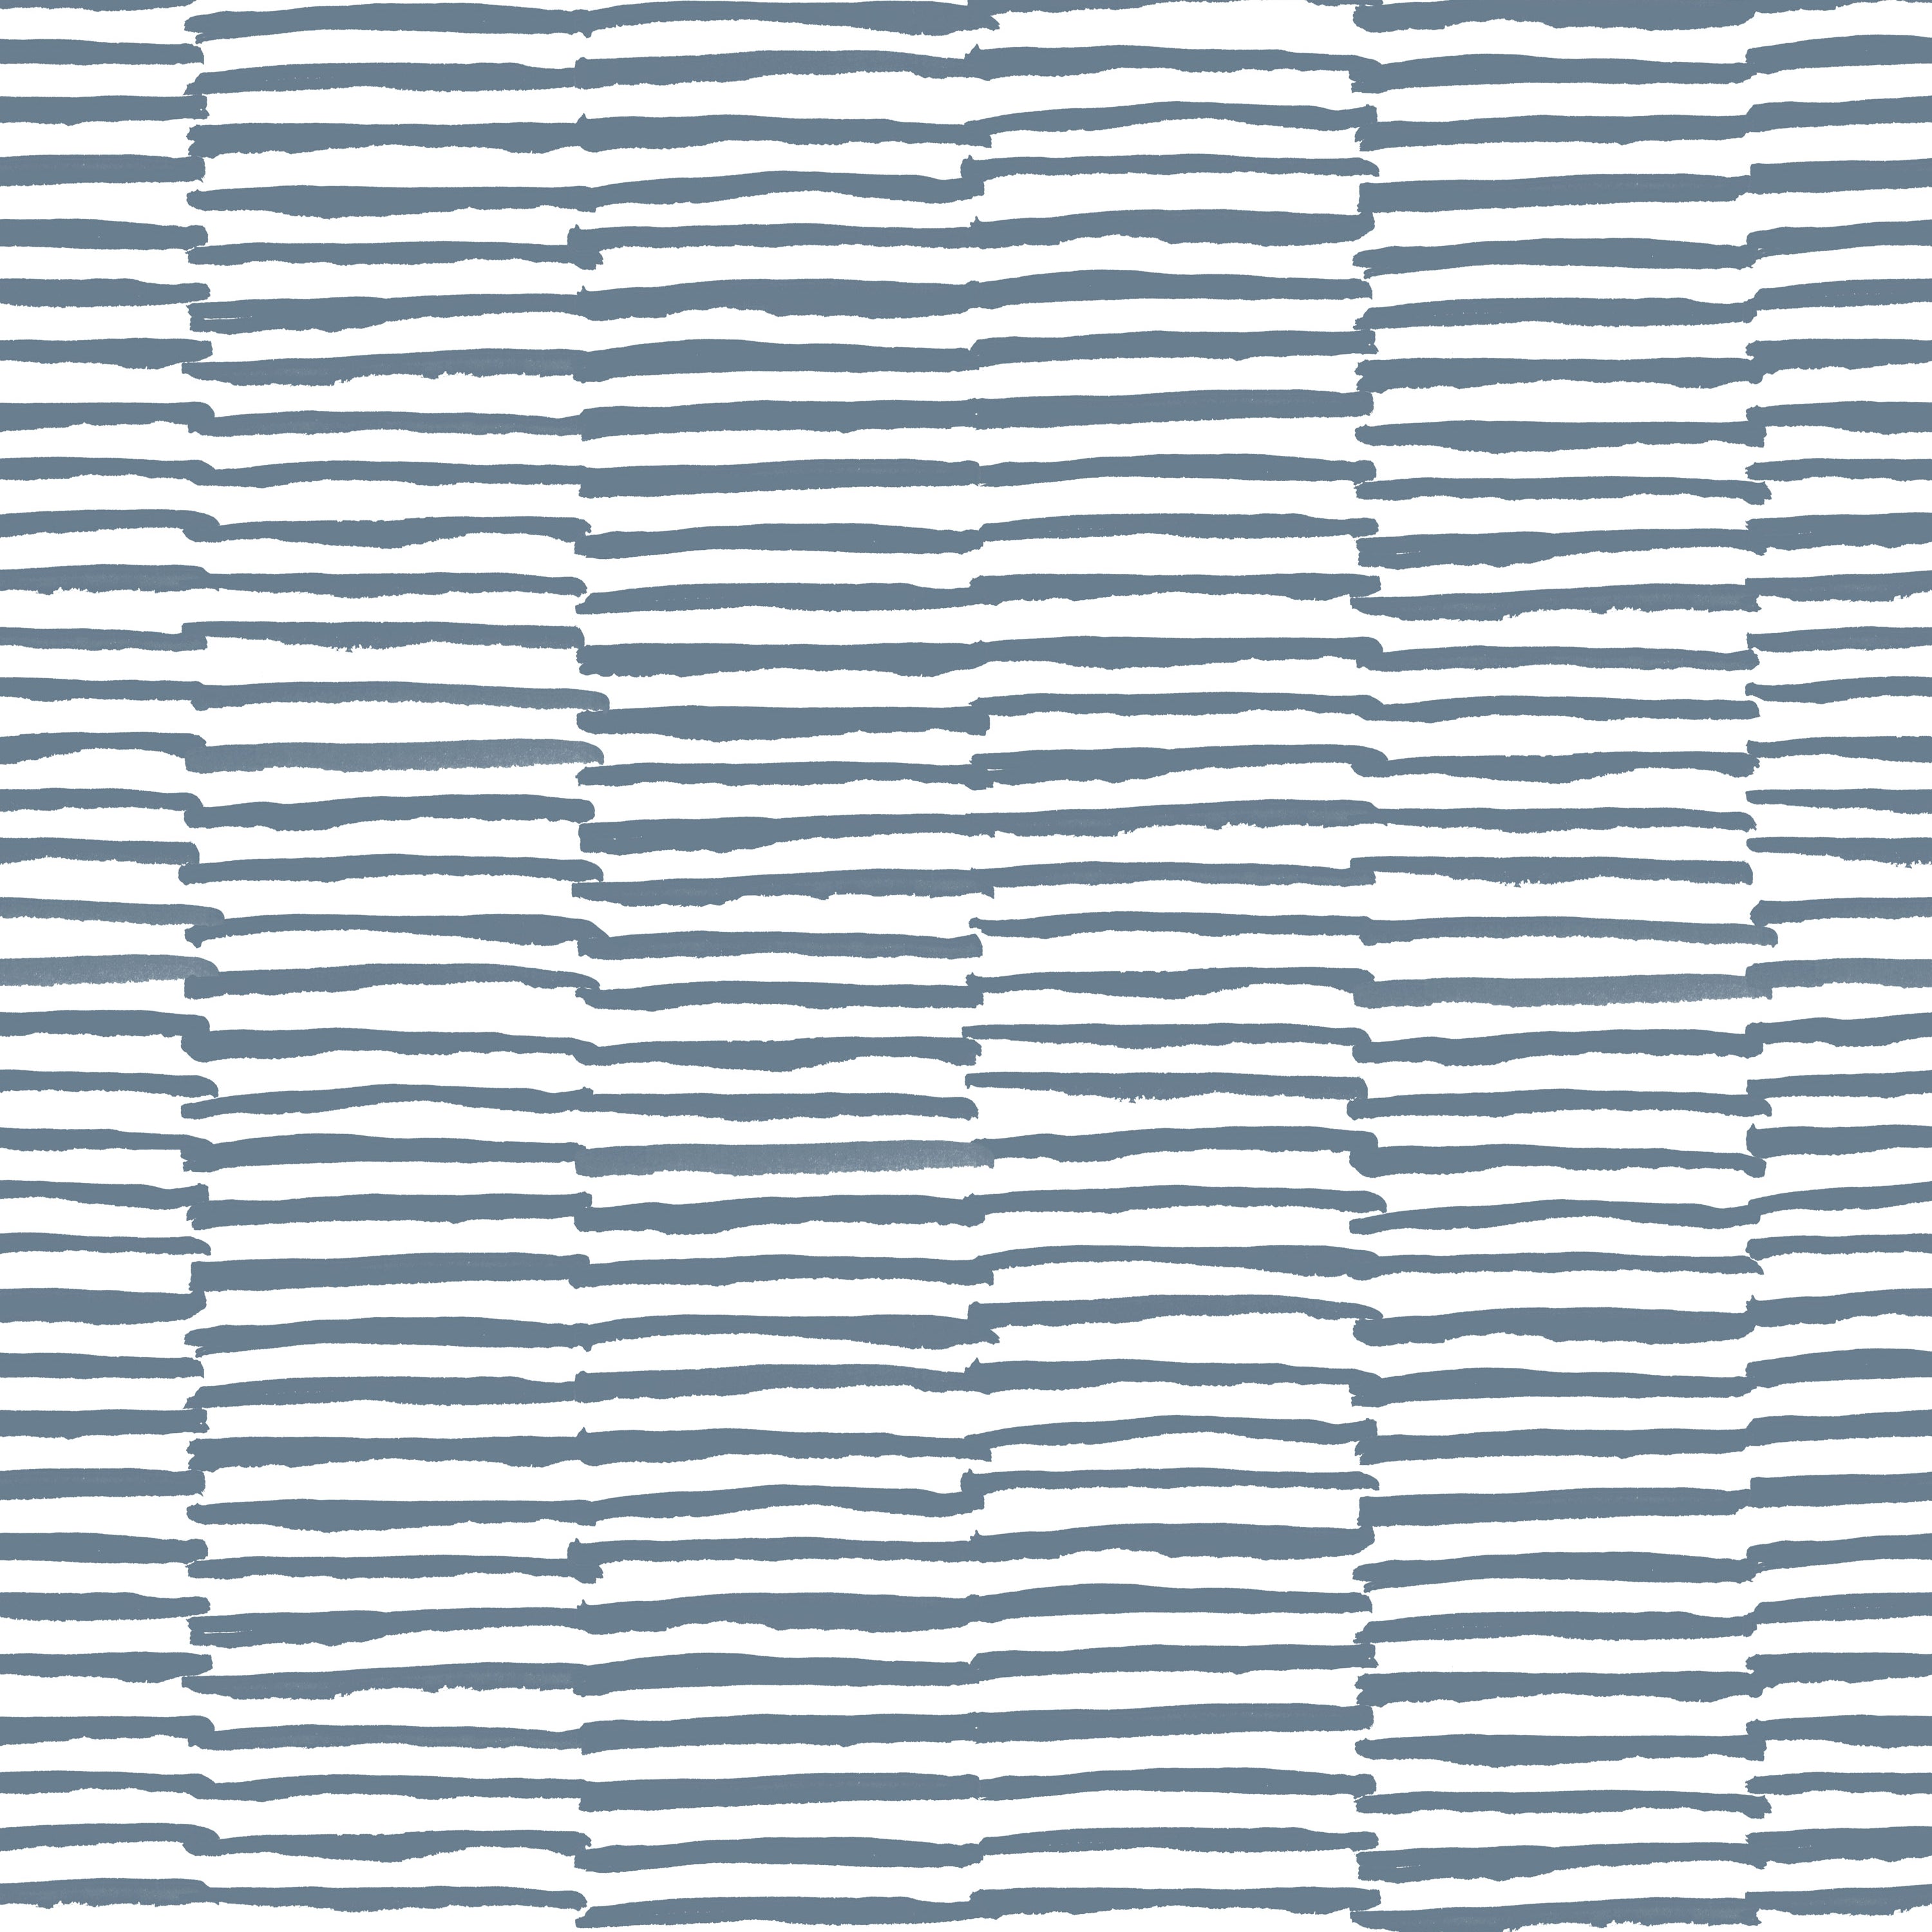 Detail of wallpaper in a broken stripe print in navy on a white field.